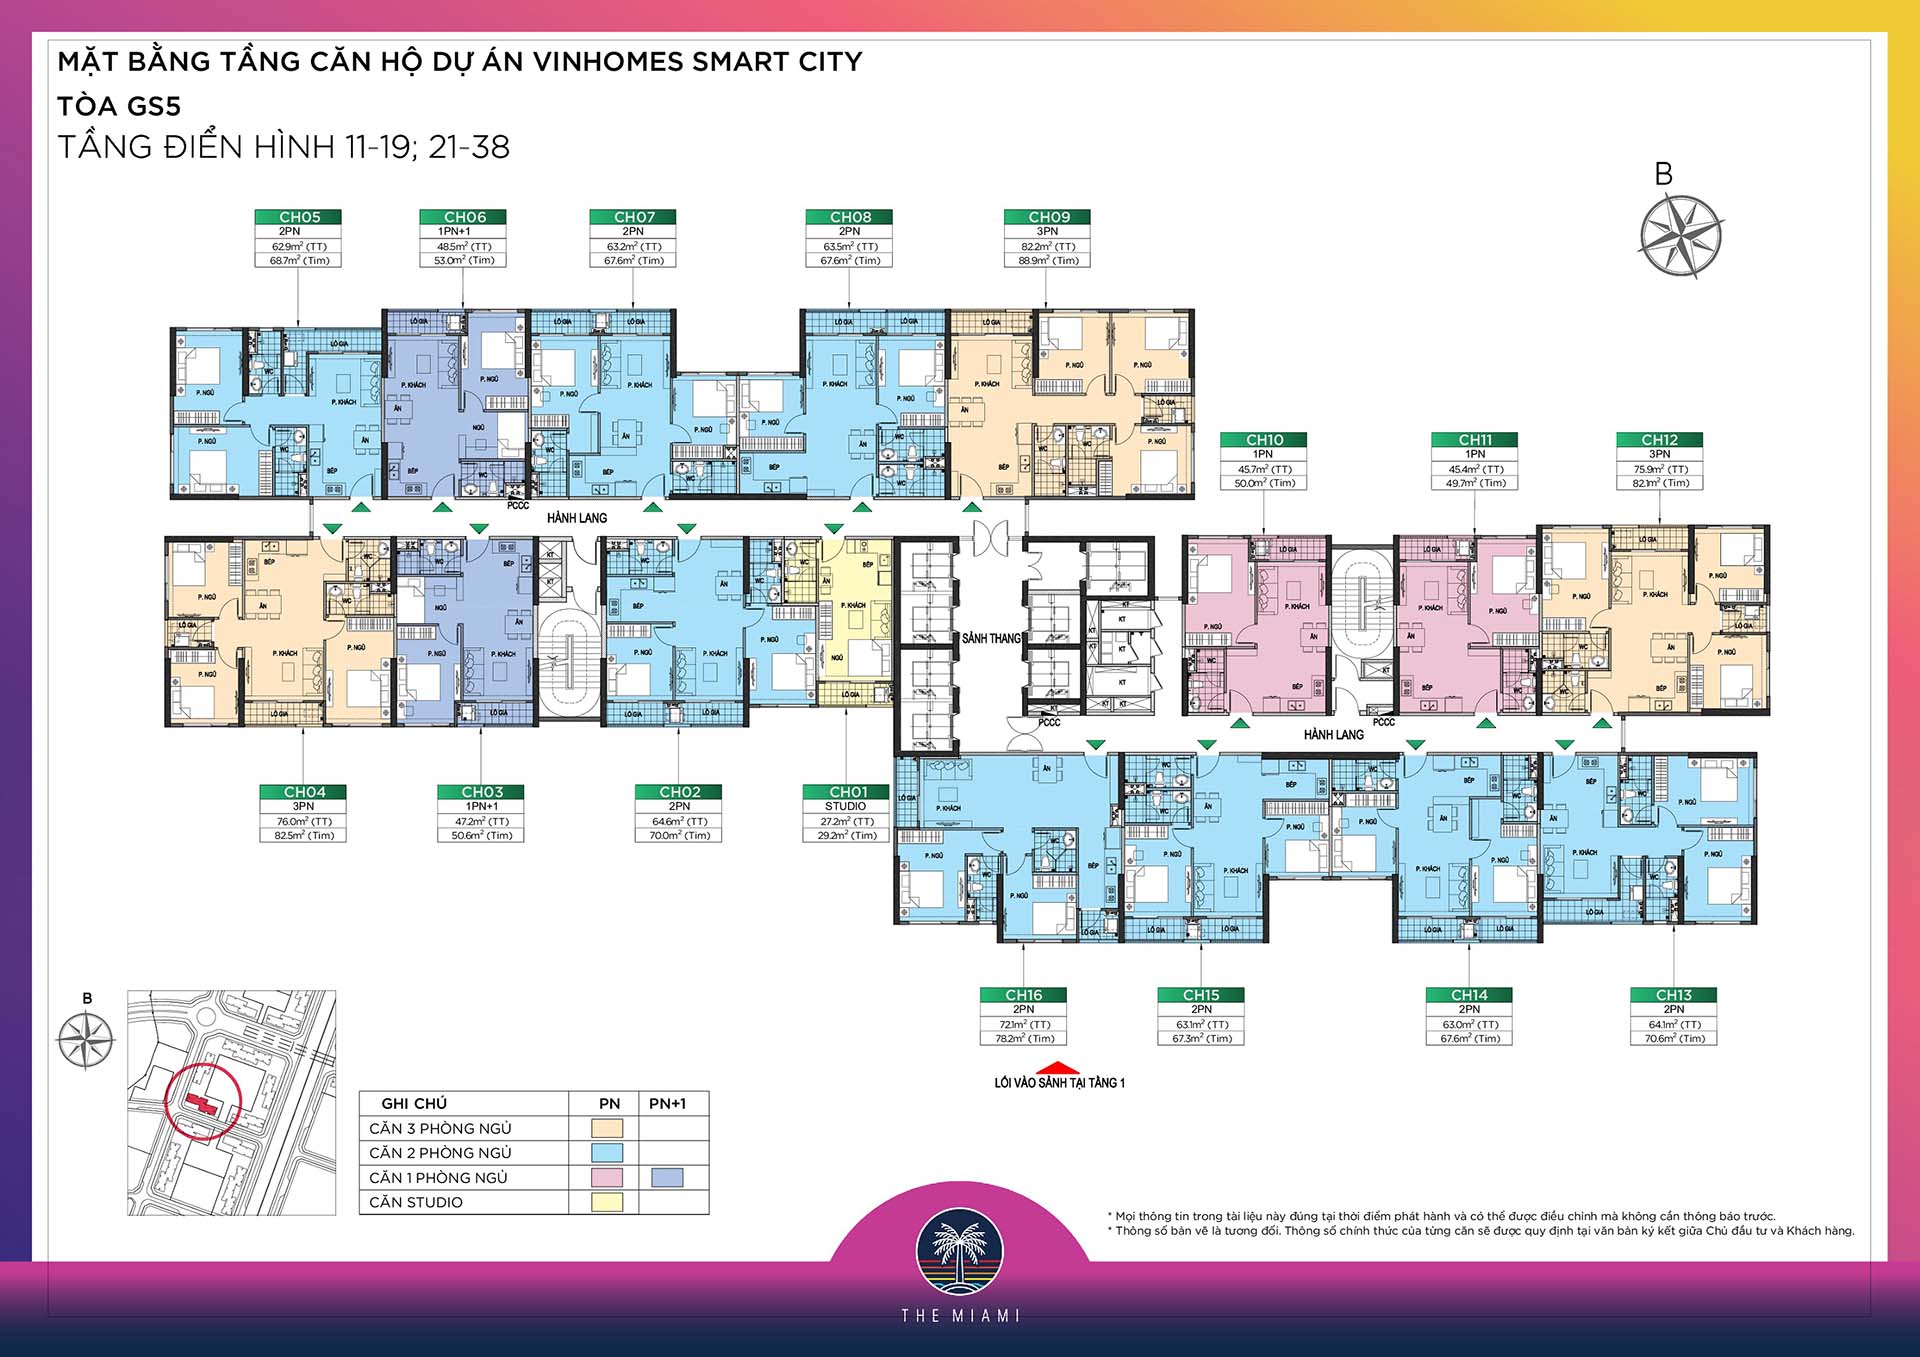 [HOT!!] Cho thuê căn hộ 3PN diện tích 81,7m2 tòa GS5 The Miami Vinhomes Smart City